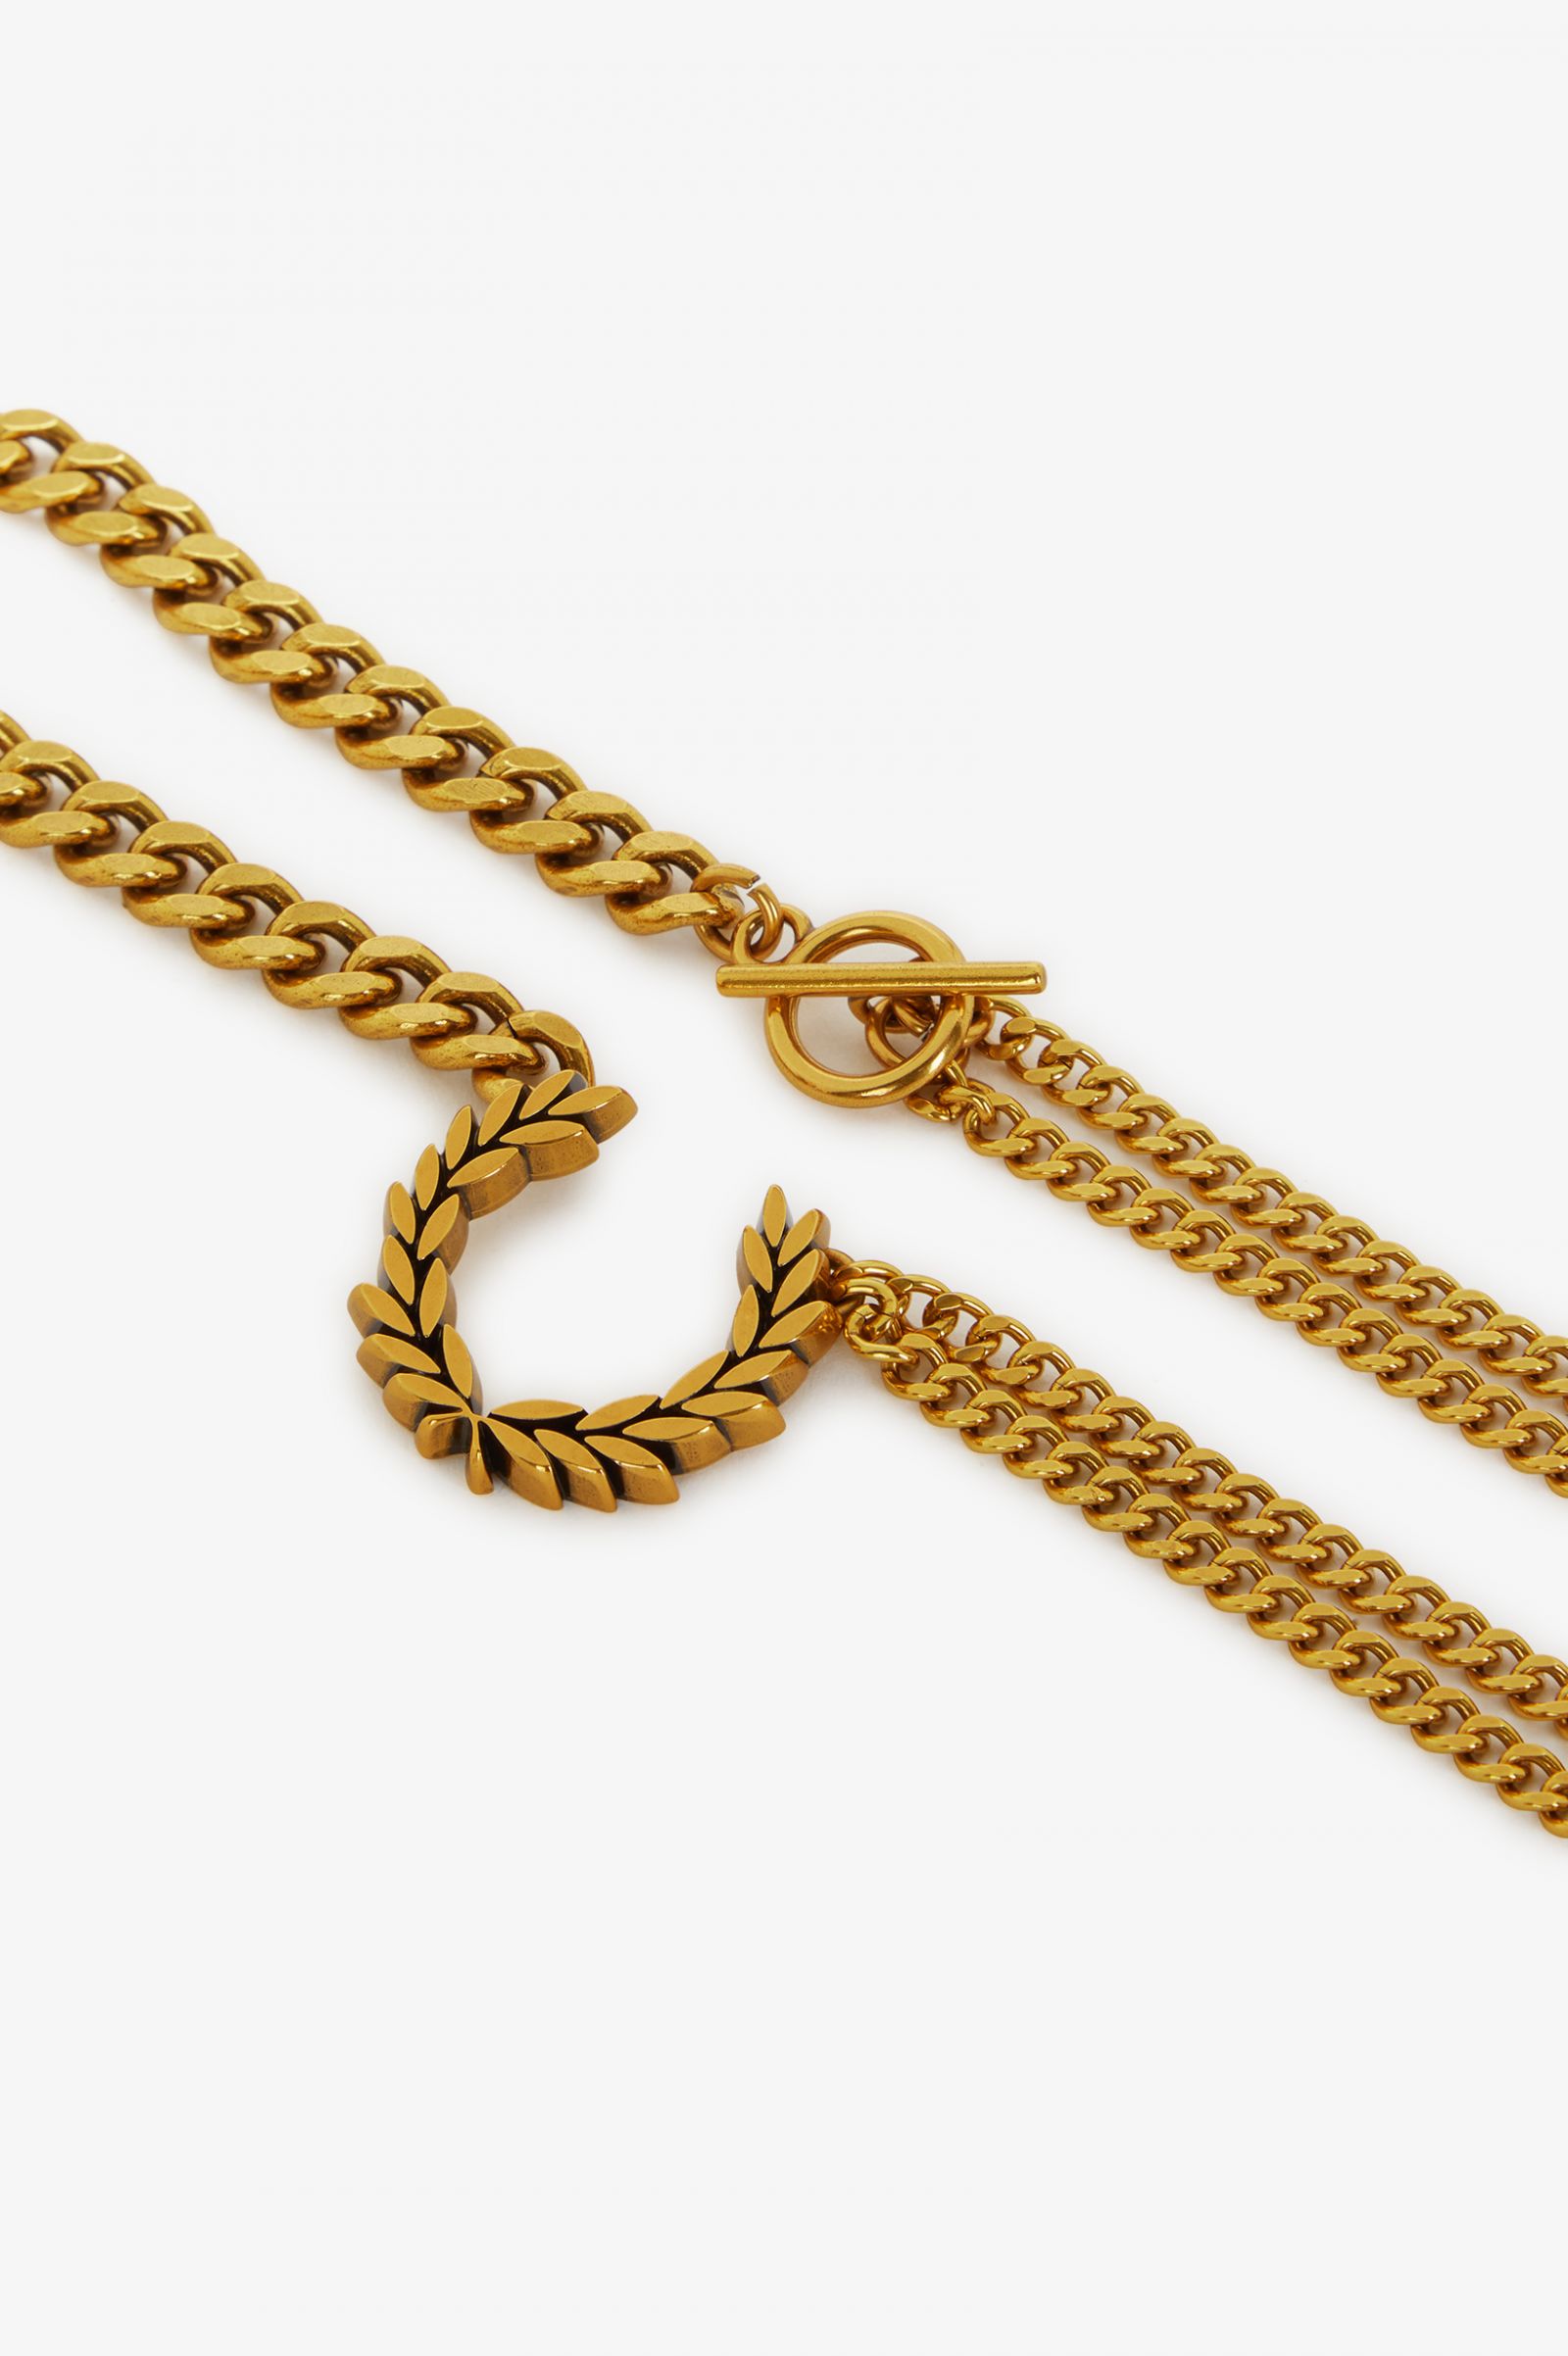 Double Chain Laurel Wreath Necklace - Gold | Men's Accessories